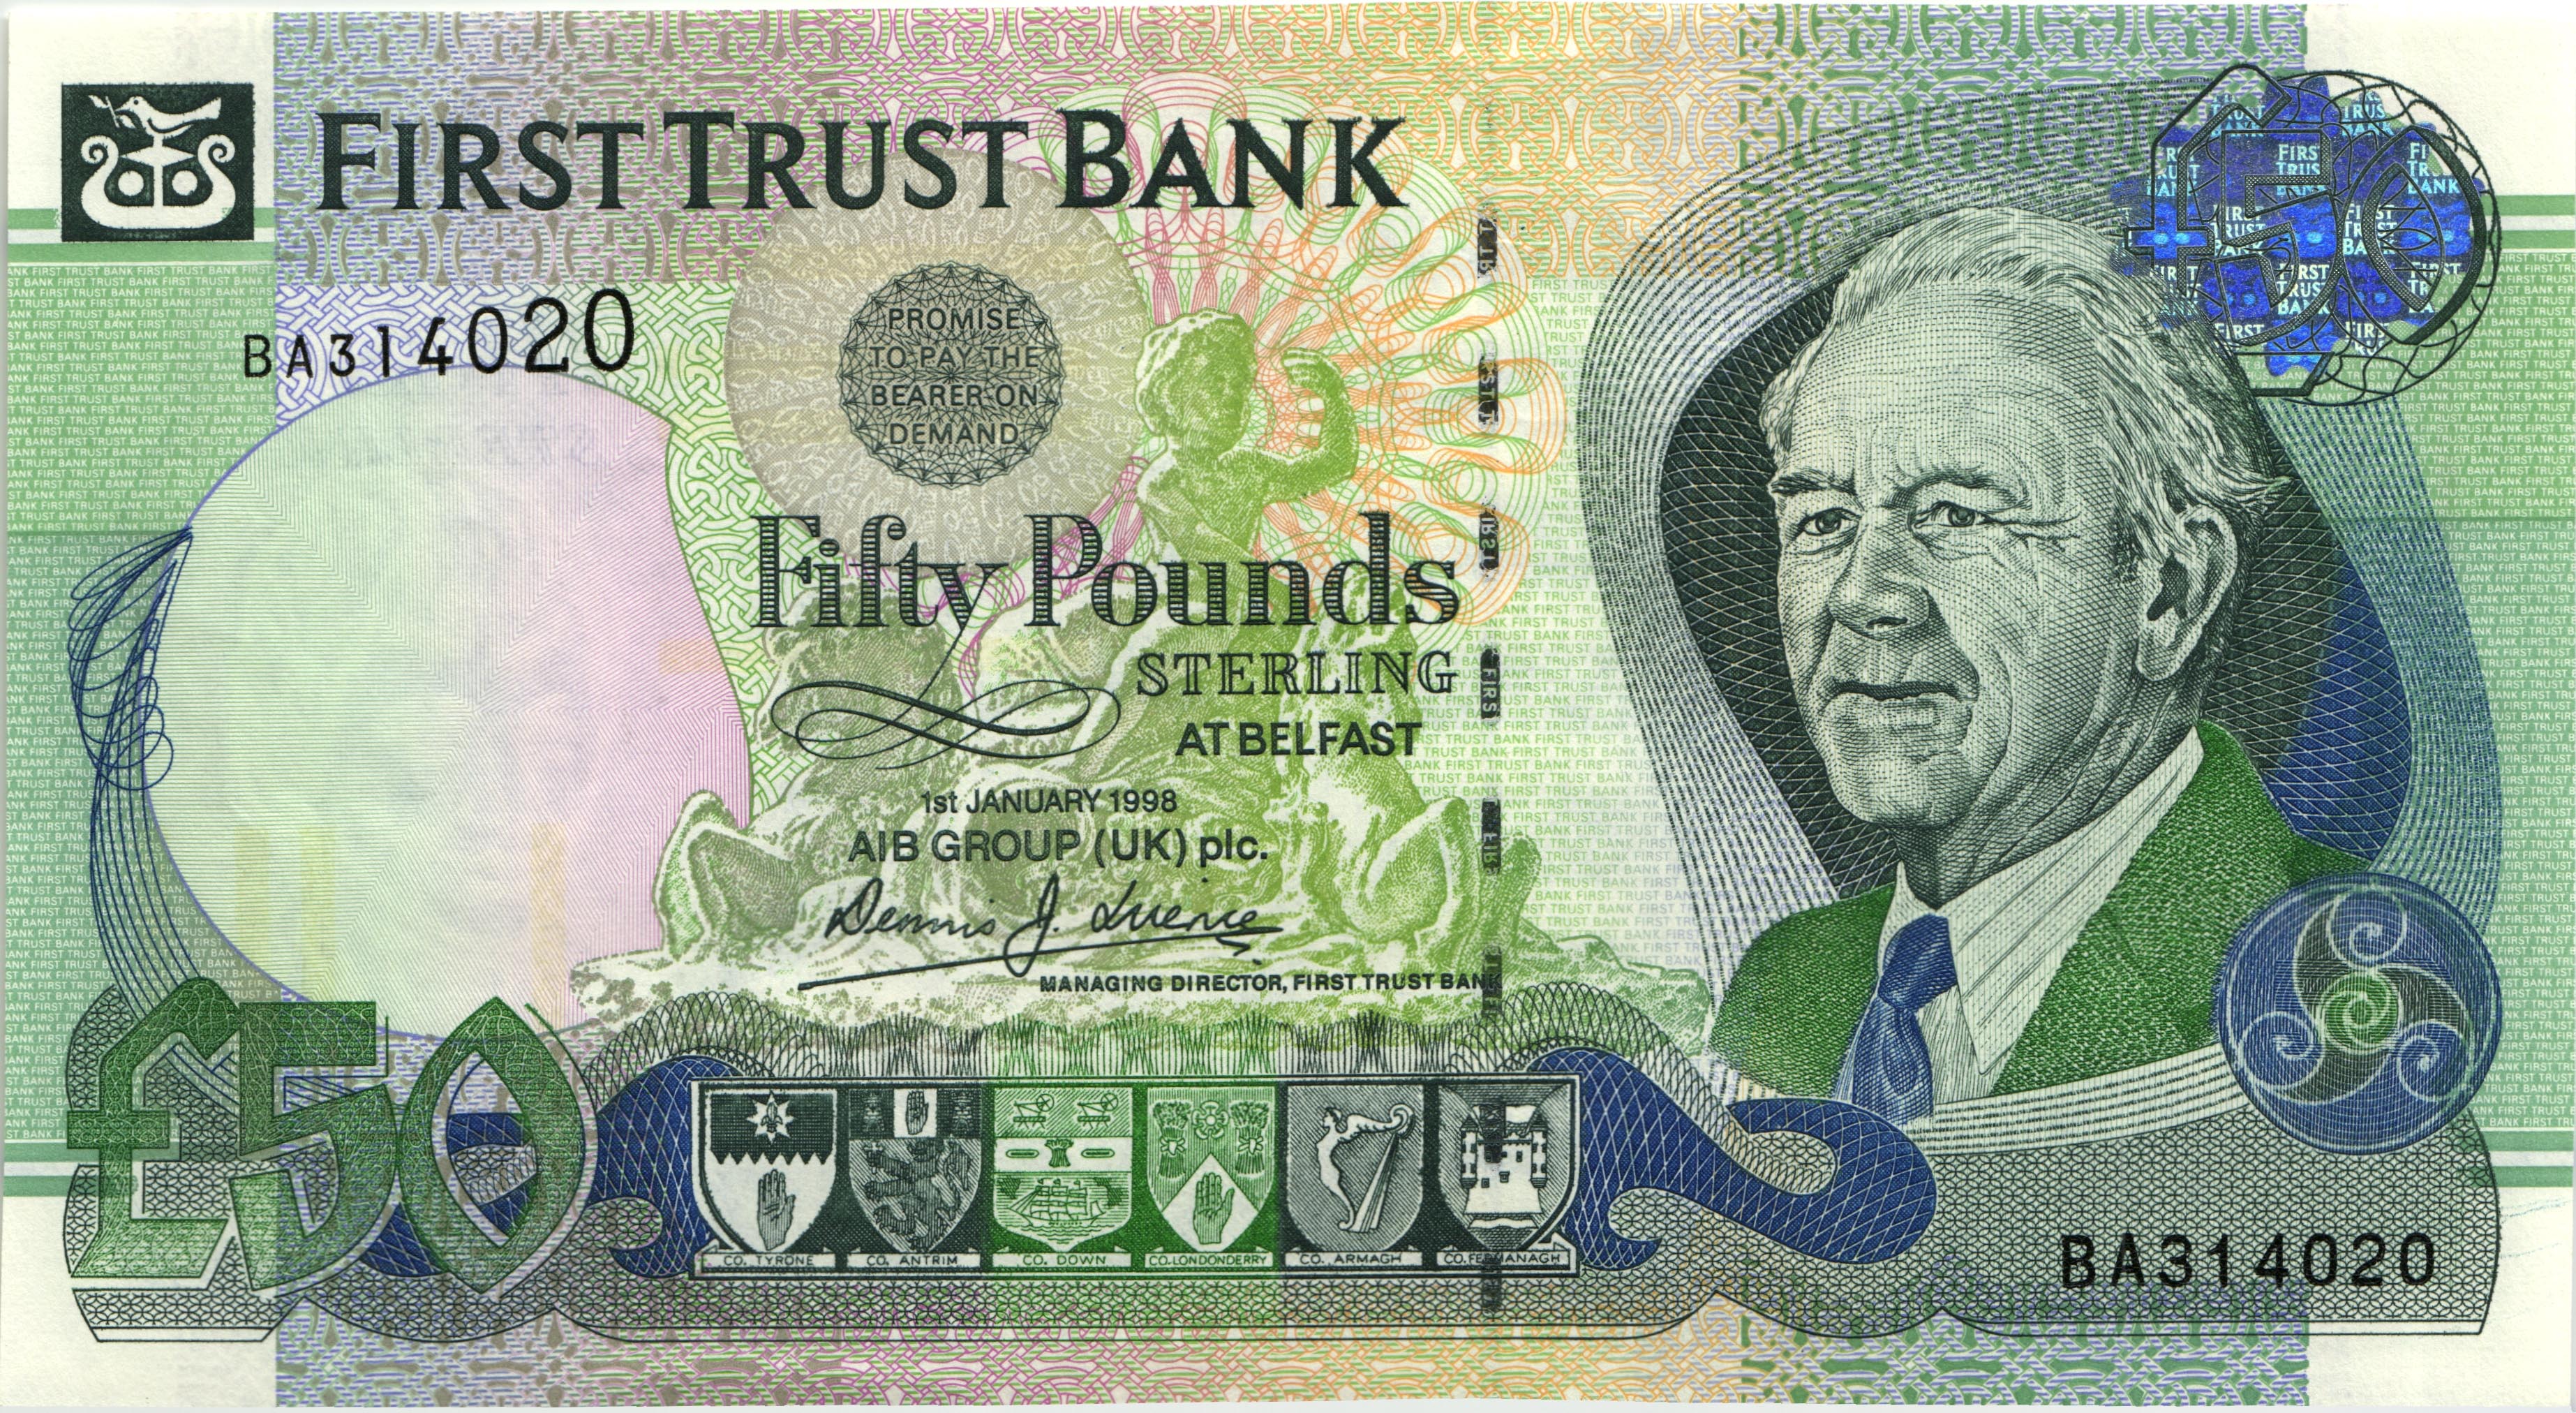 Первые 50 банков. Северная Ирландия 50 Trust Bank 1998. Ирландия 50 фунтов. 50 Фунтов Северной Ирландии. 50 Ирландских фунтов.